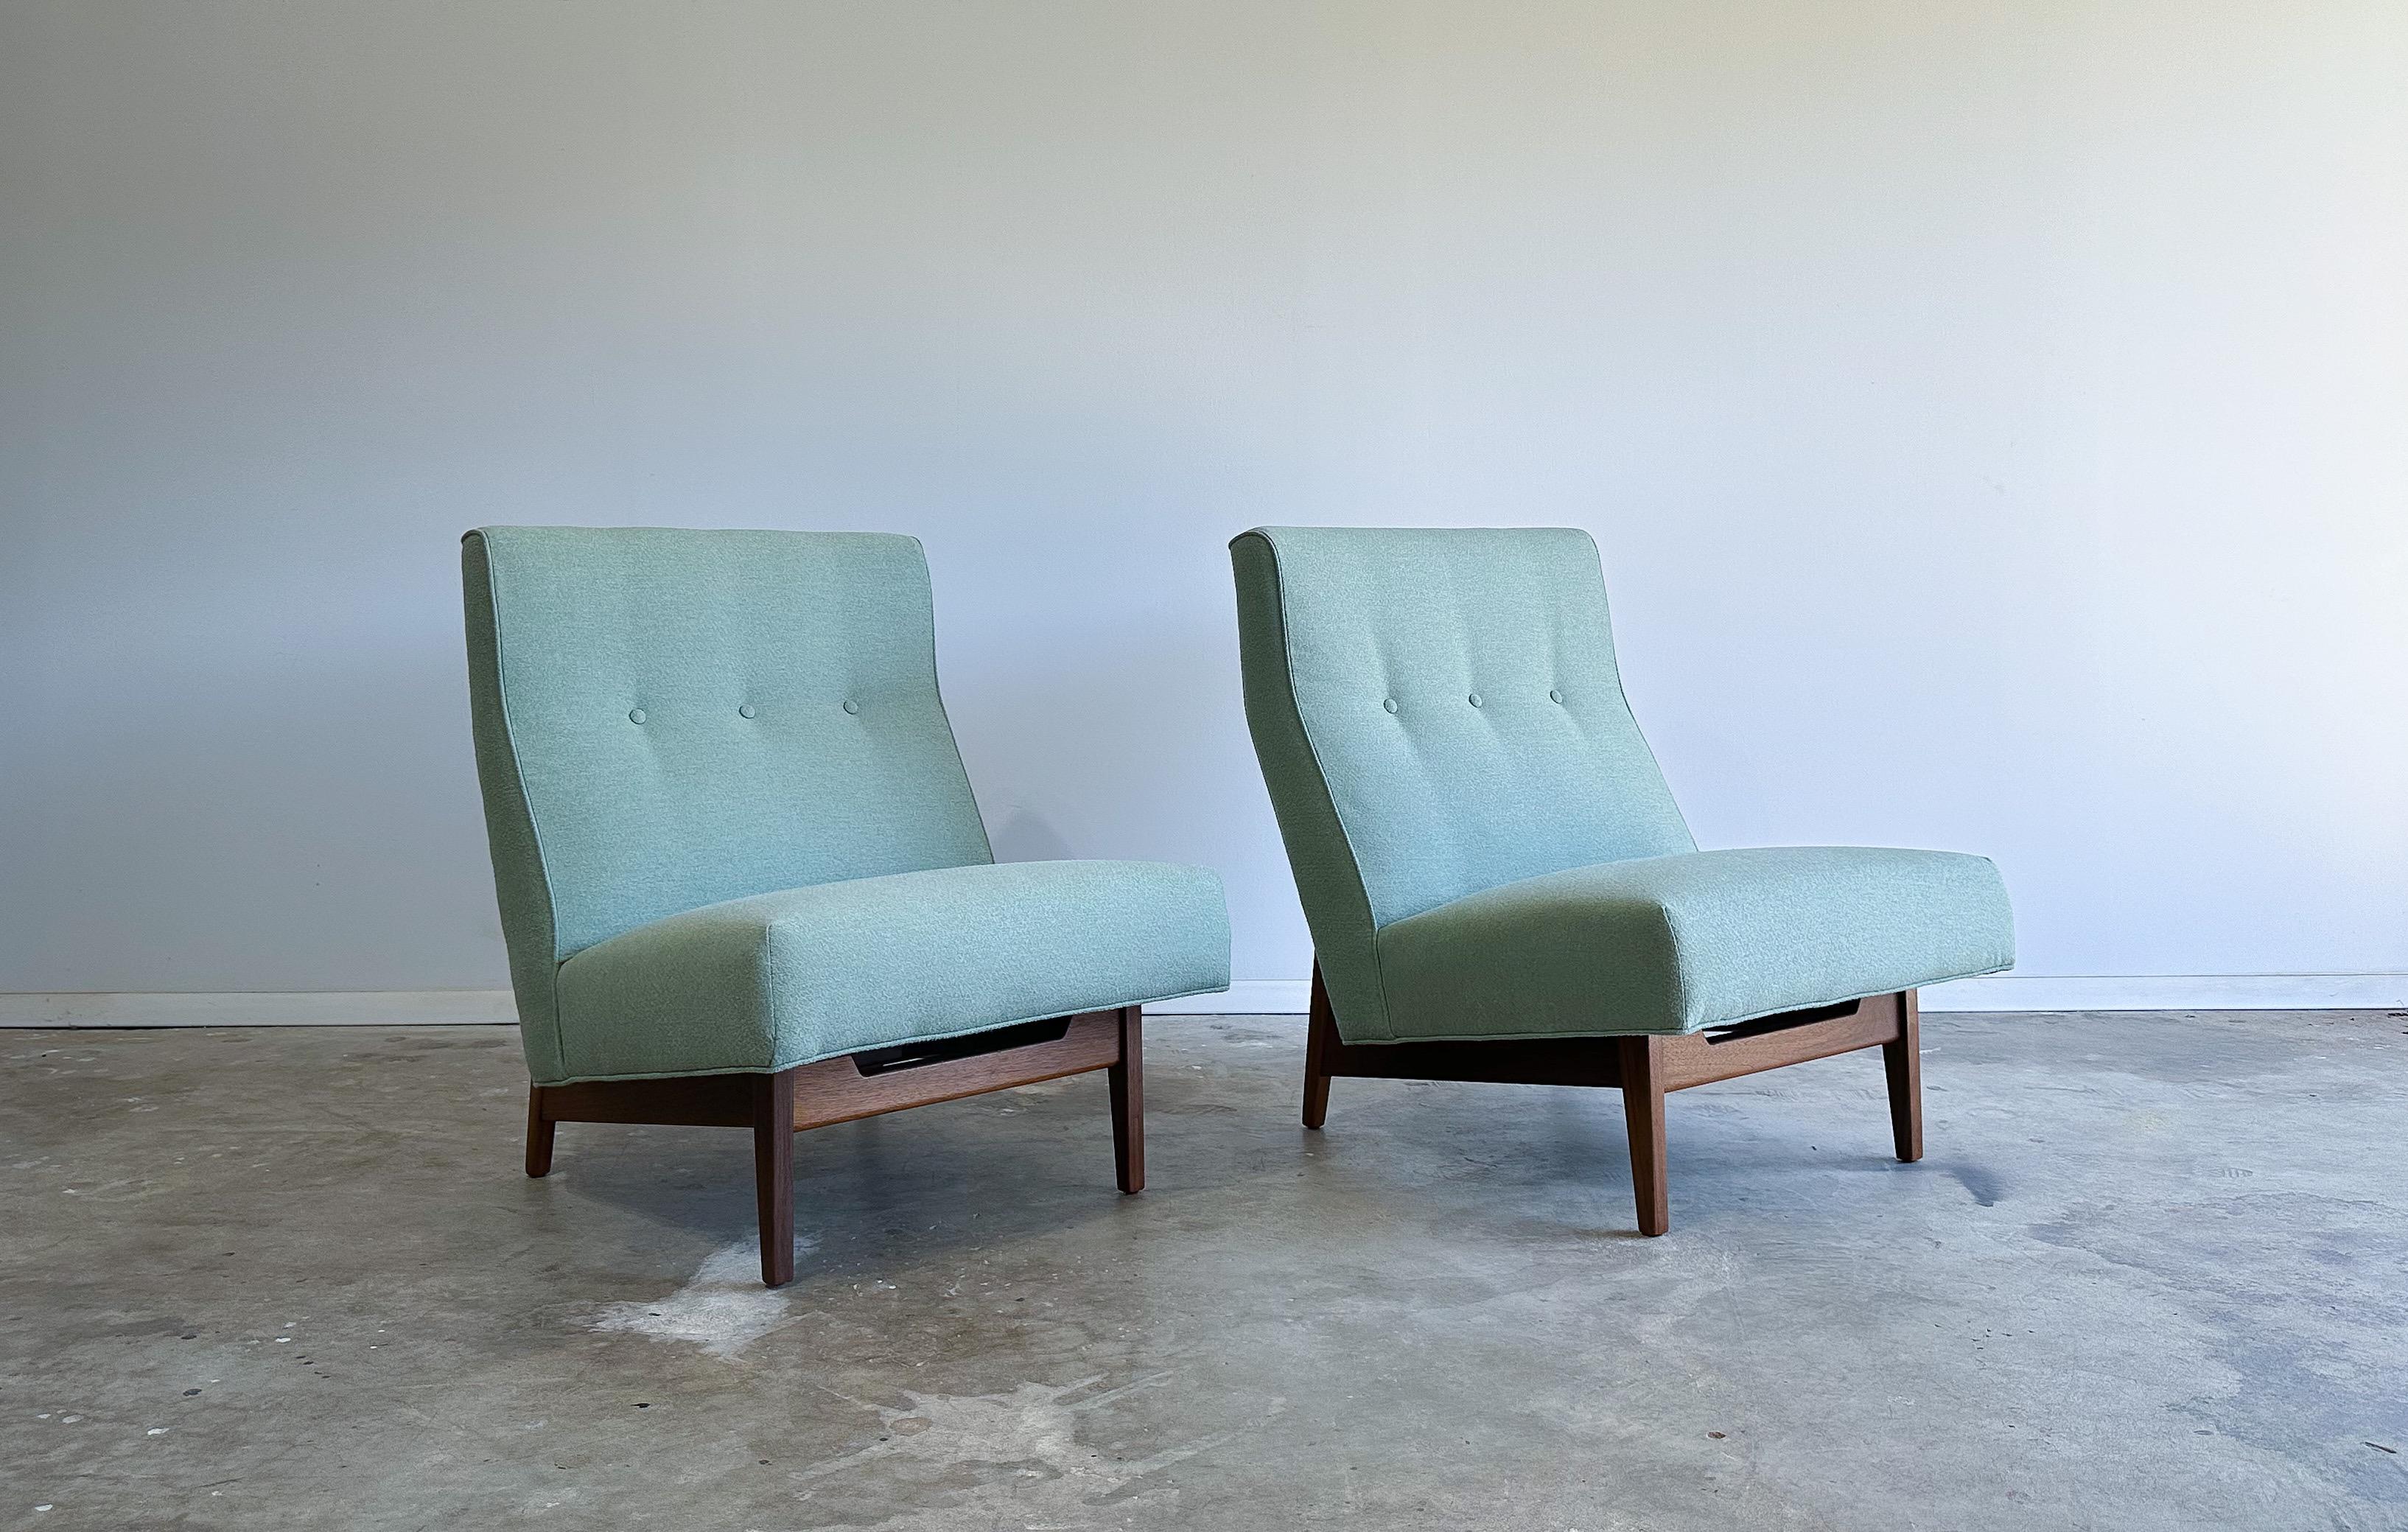 Nous vous proposons une magnifique paire de chaises à pantoufles conçues par Jens Risom. 

Les cadres élégants en noyer massif semblent entourer les sièges nouvellement rembourrés. Nous appellerions la couleur du tissu sauge, ou pistache. Les cadres